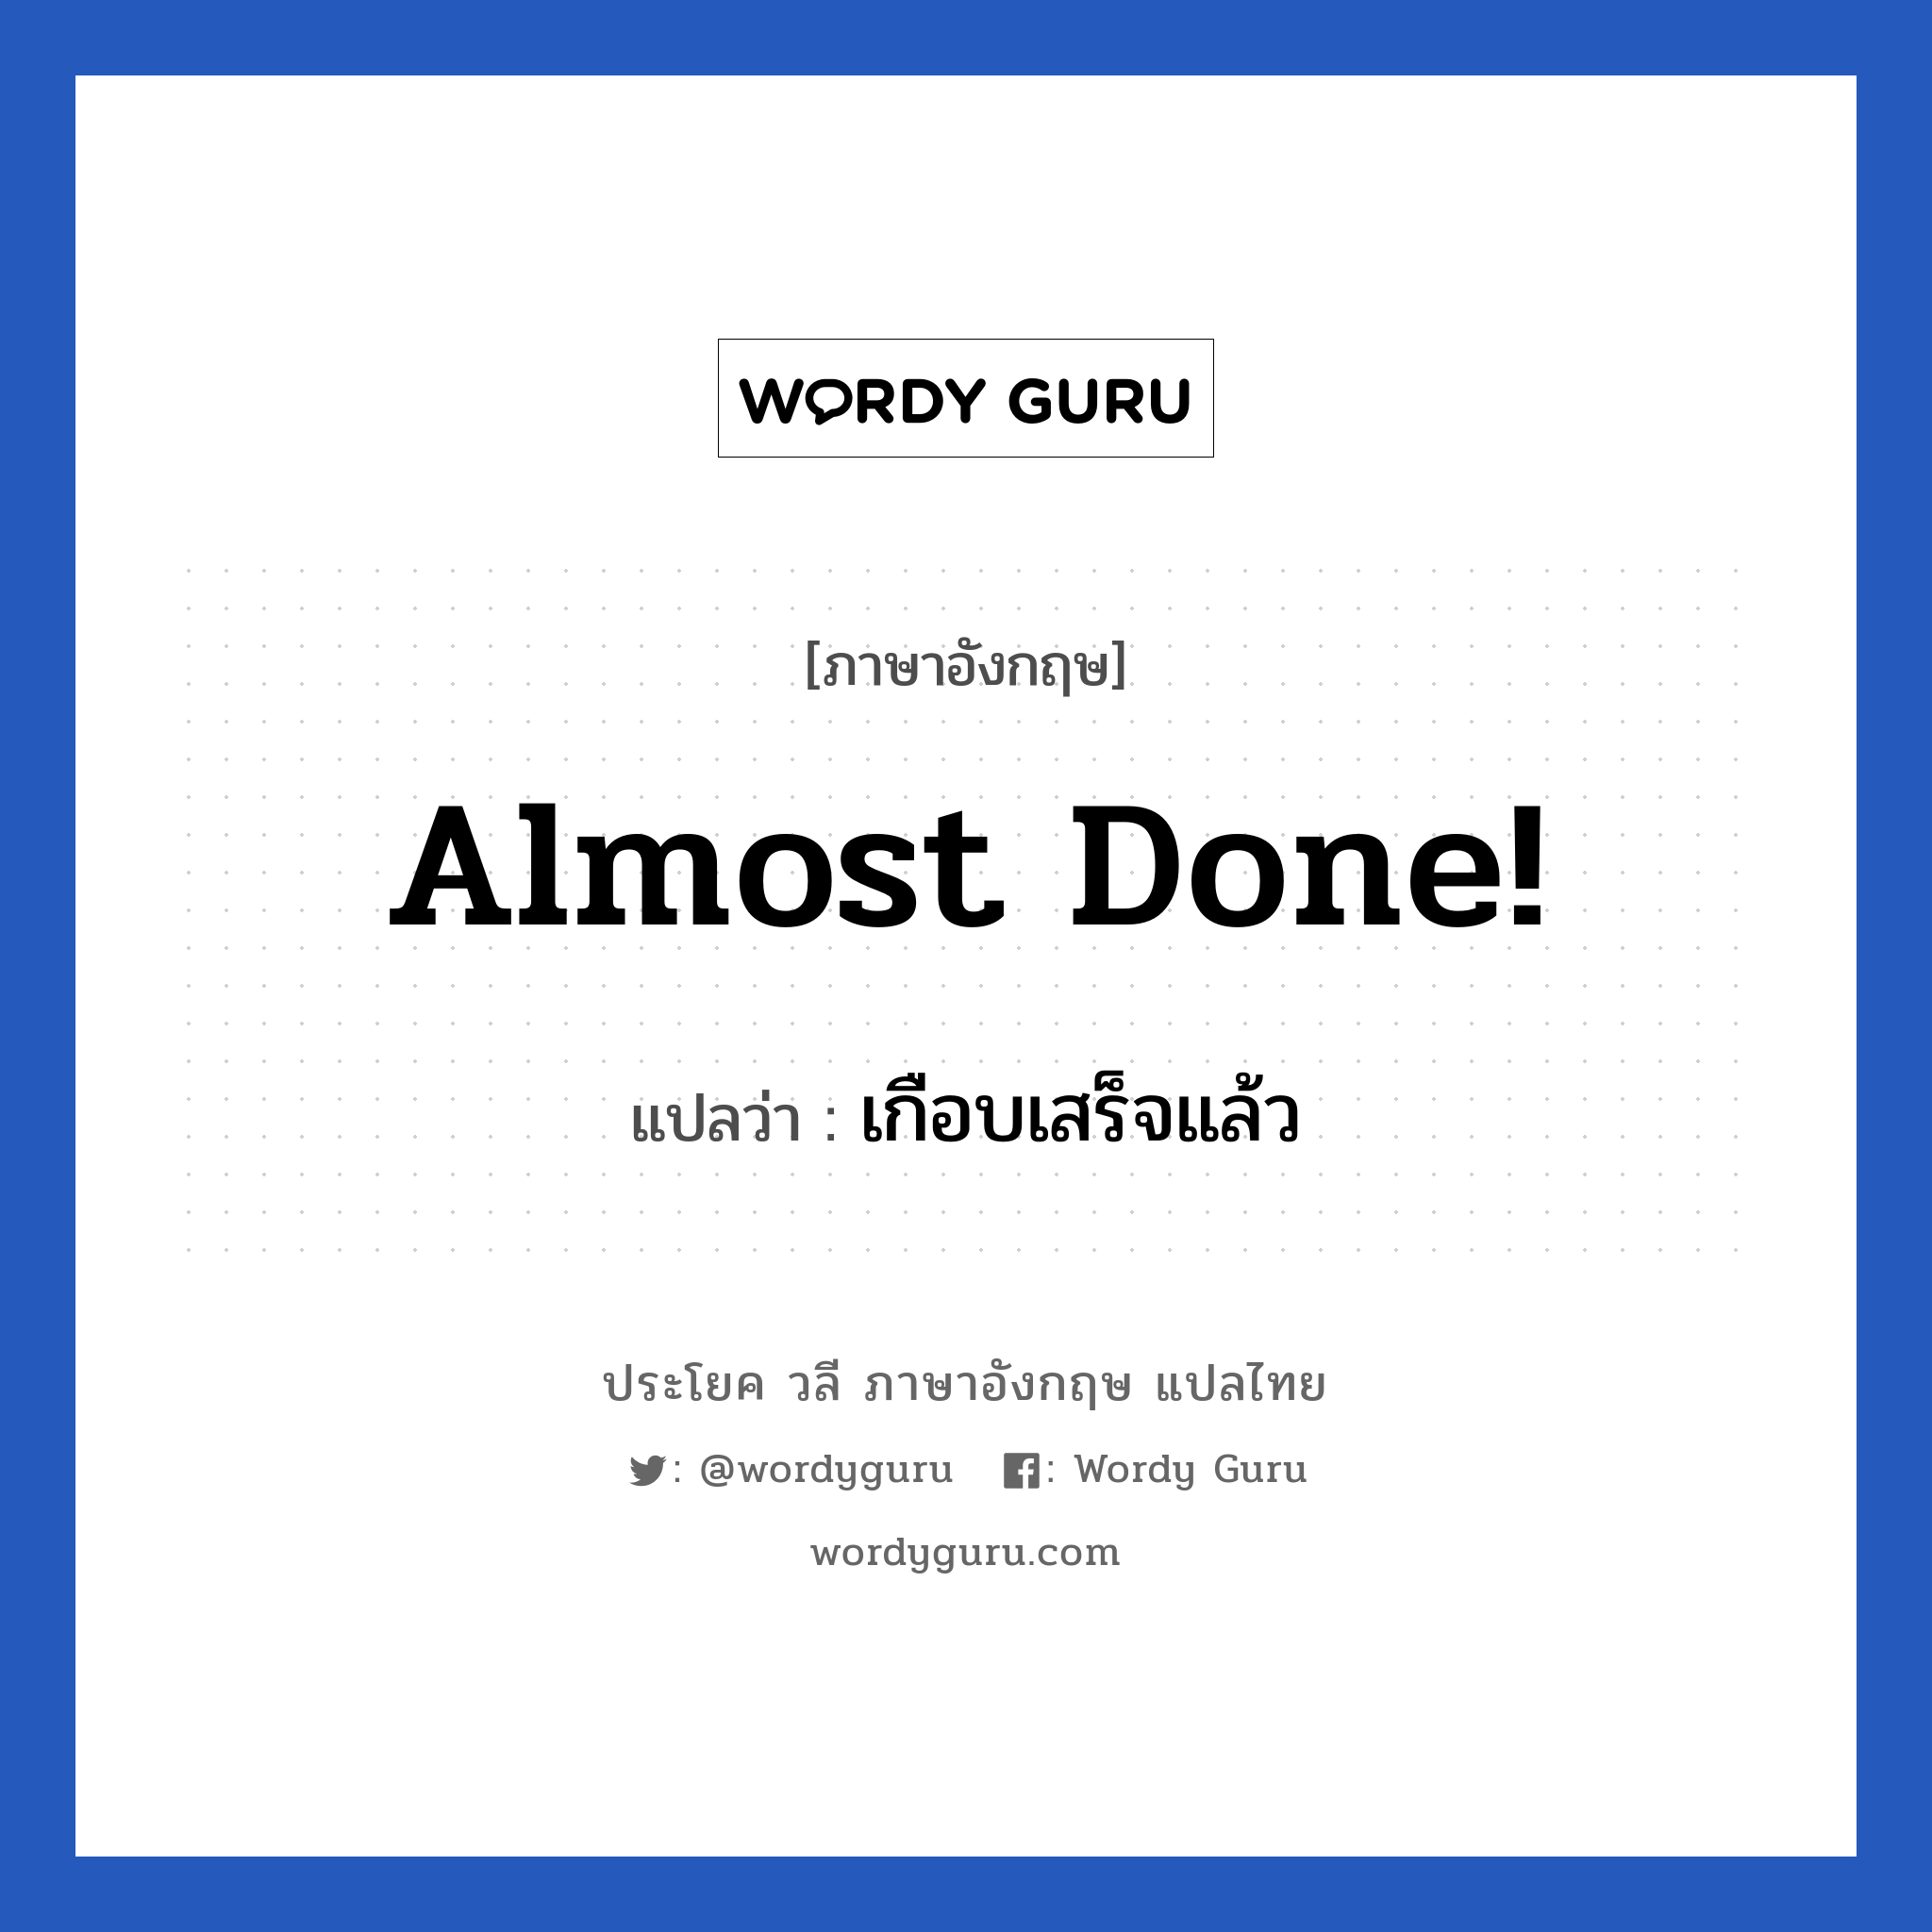 เกือบเสร็จแล้ว ภาษาอังกฤษ?, วลีภาษาอังกฤษ เกือบเสร็จแล้ว แปลว่า Almost done!